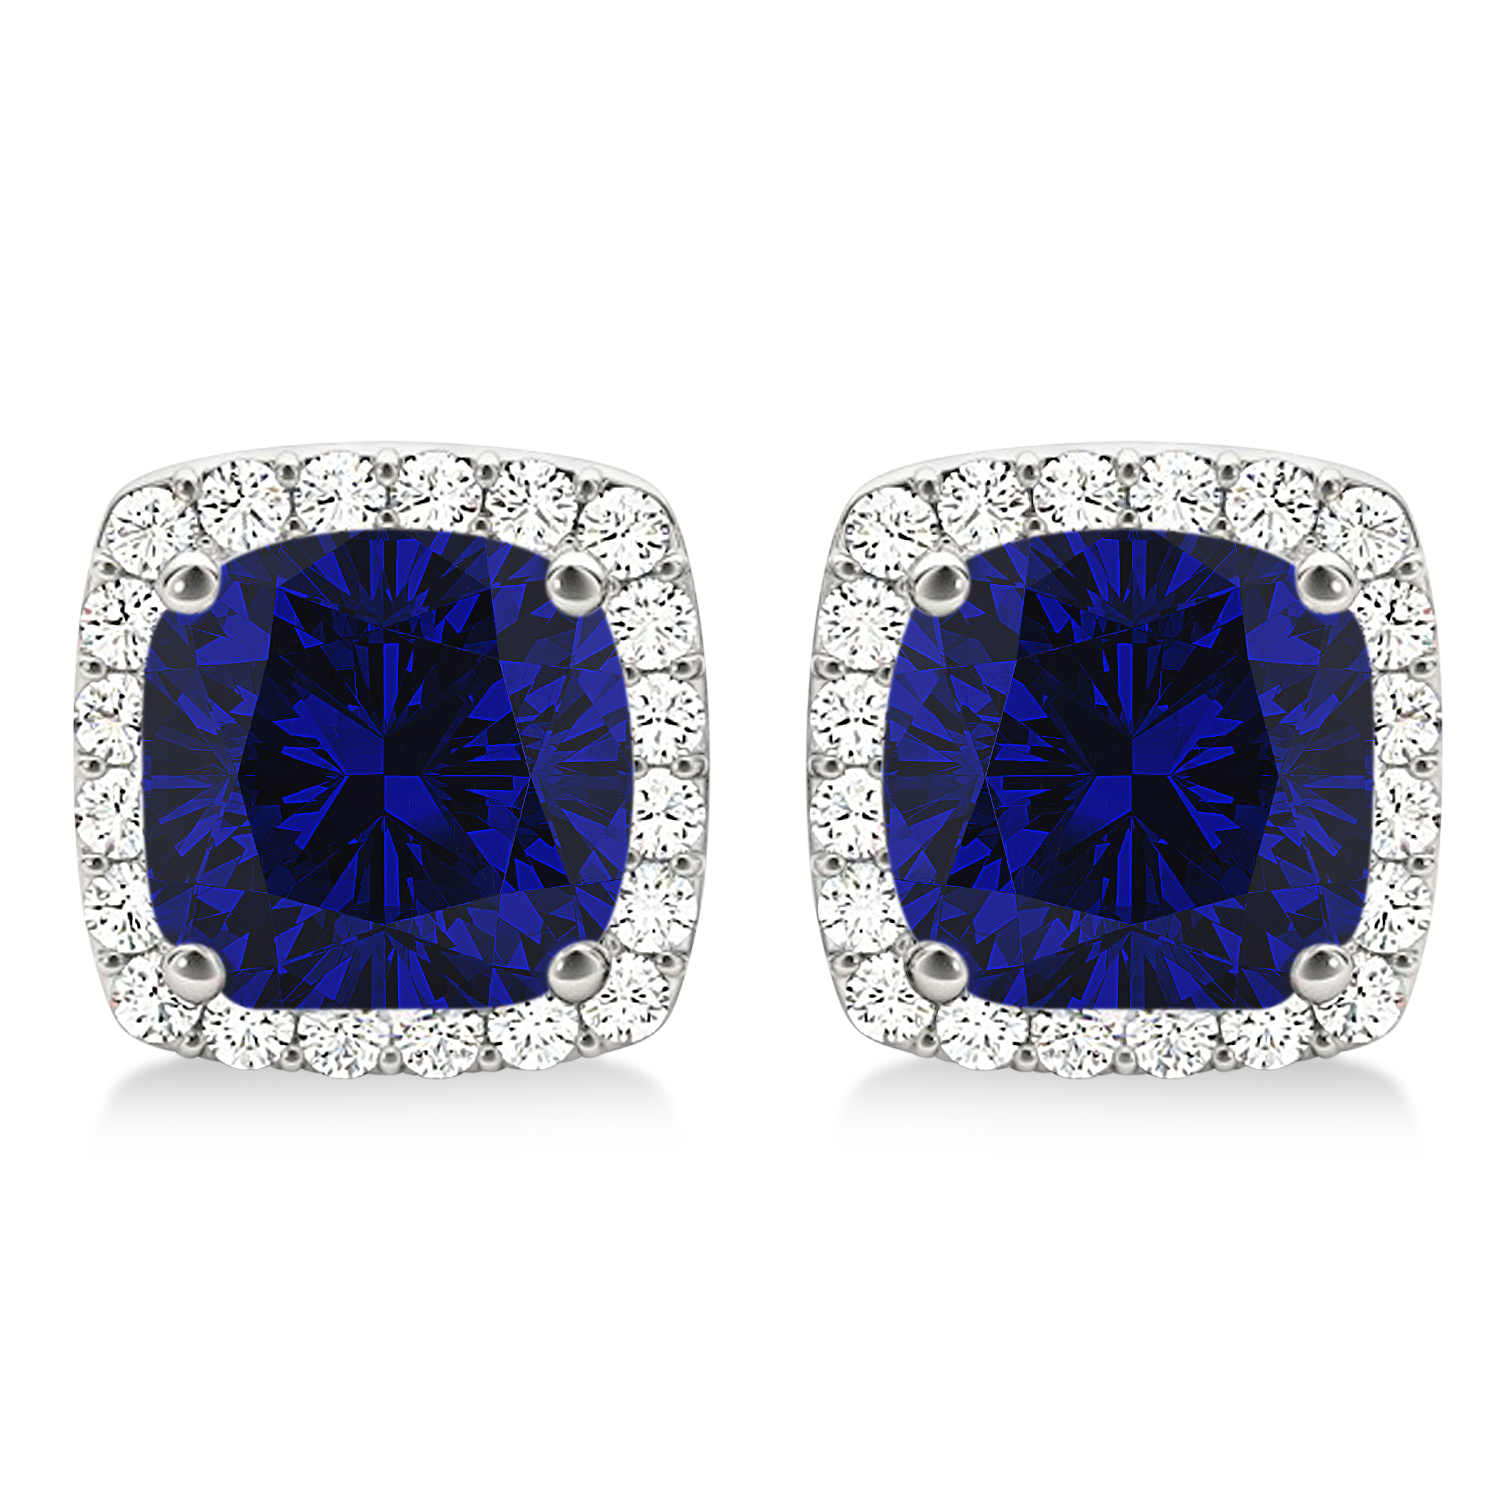 Cushion Cut Lab Blue Sapphire & Diamond Halo Earrings 14k White Gold (1.50ct)